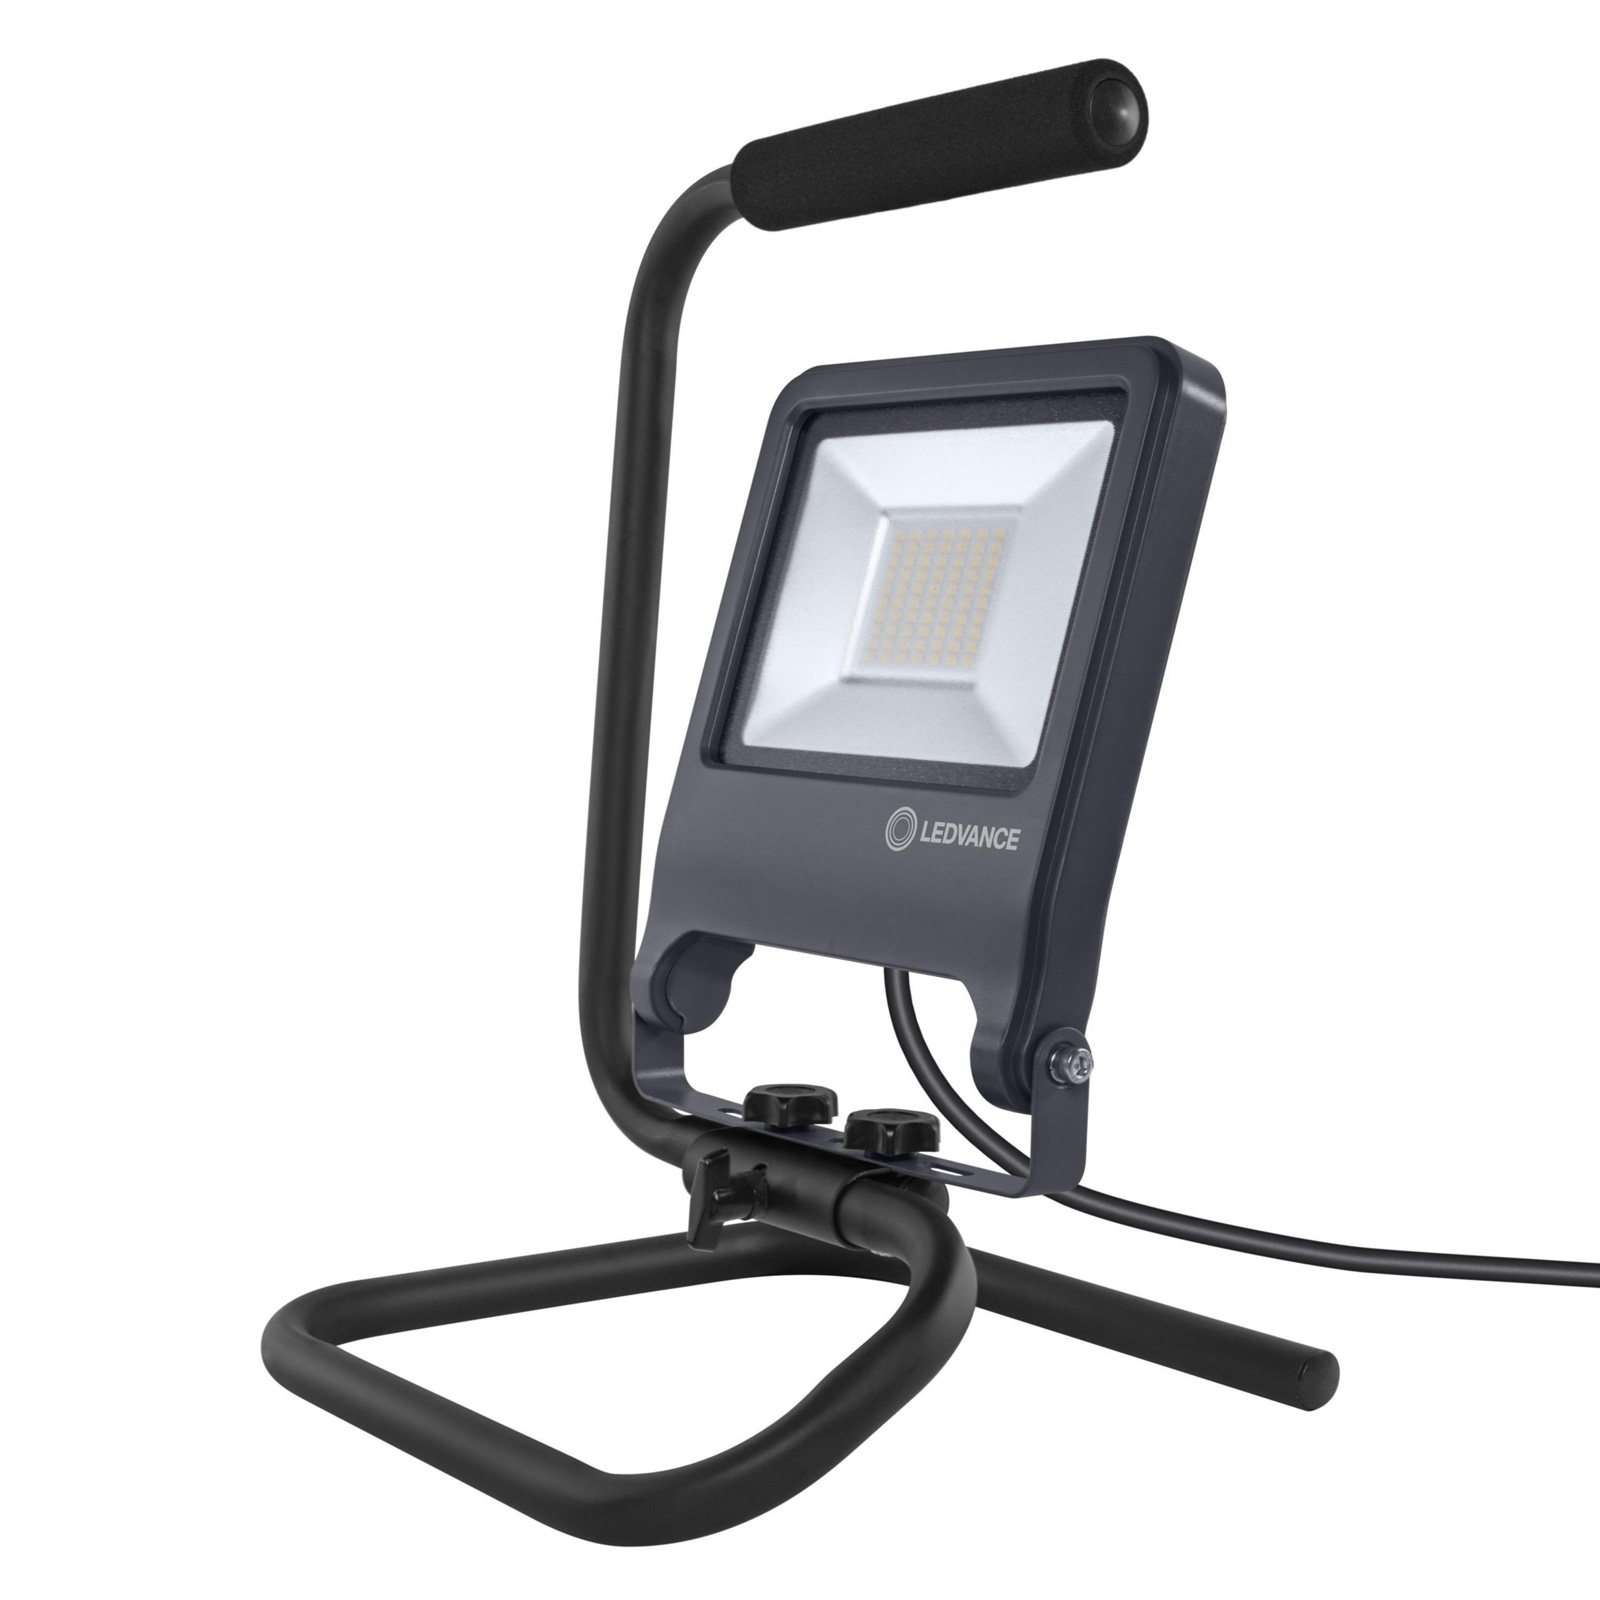 Dicteren aflevering aankomen LEDVANCE Worklight LED bouwlamp S-stand 50W | Lampen24.nl